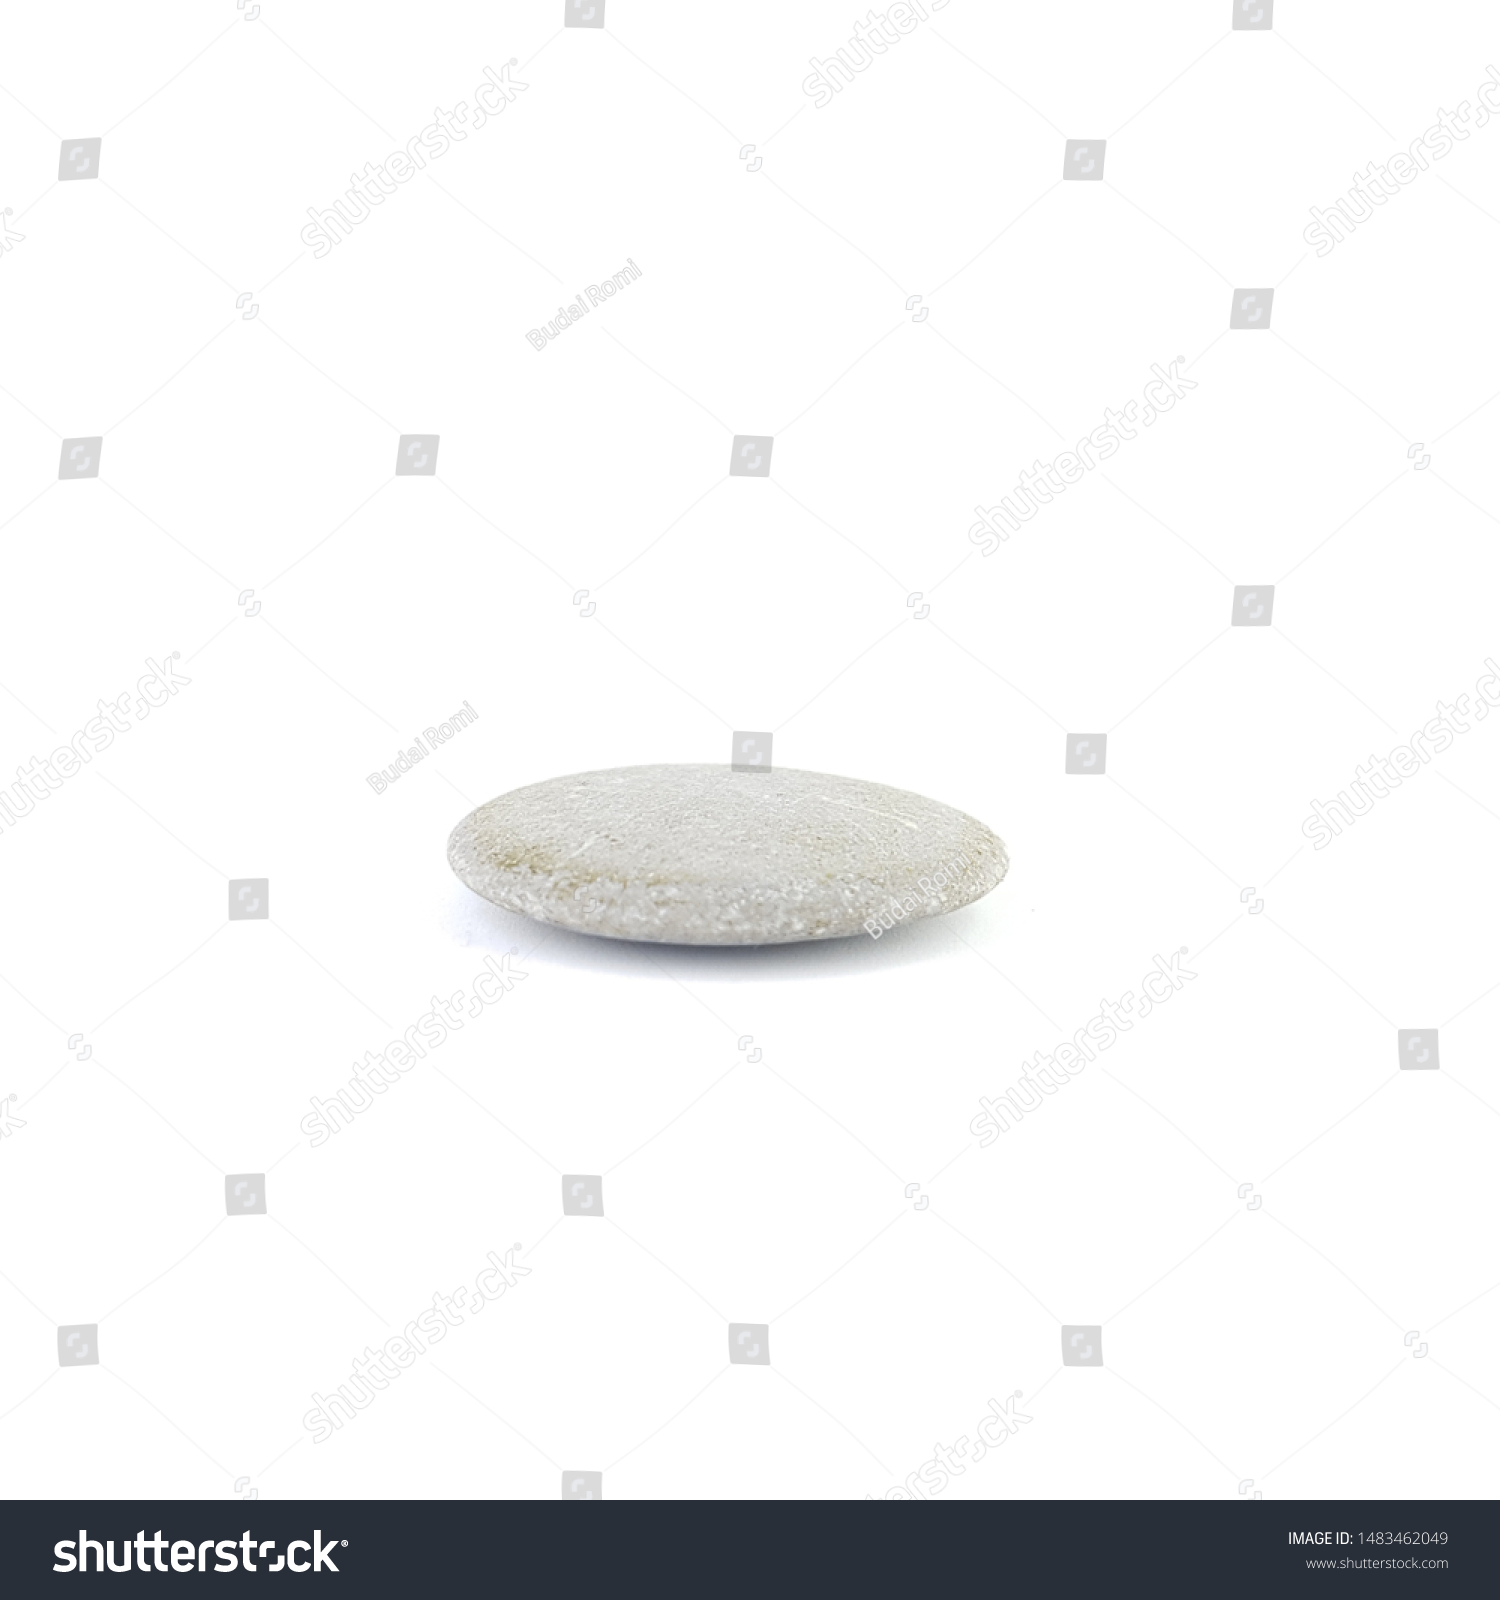 Isolated stone on white background macro single object #1483462049